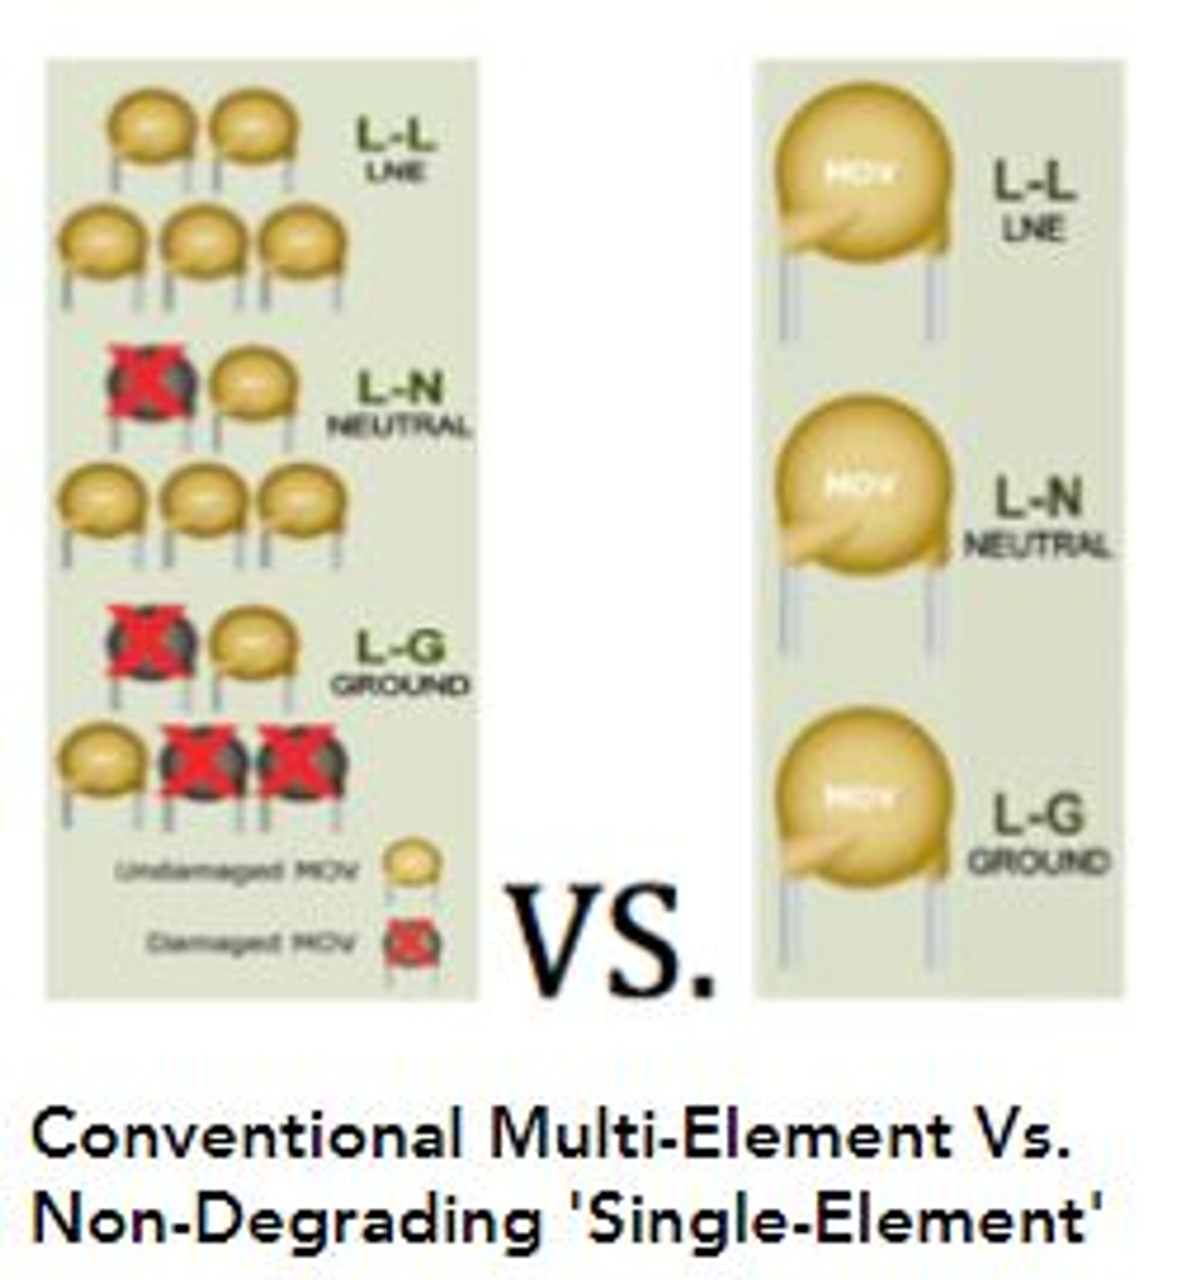 Comparirion of single versus multiple element MOV